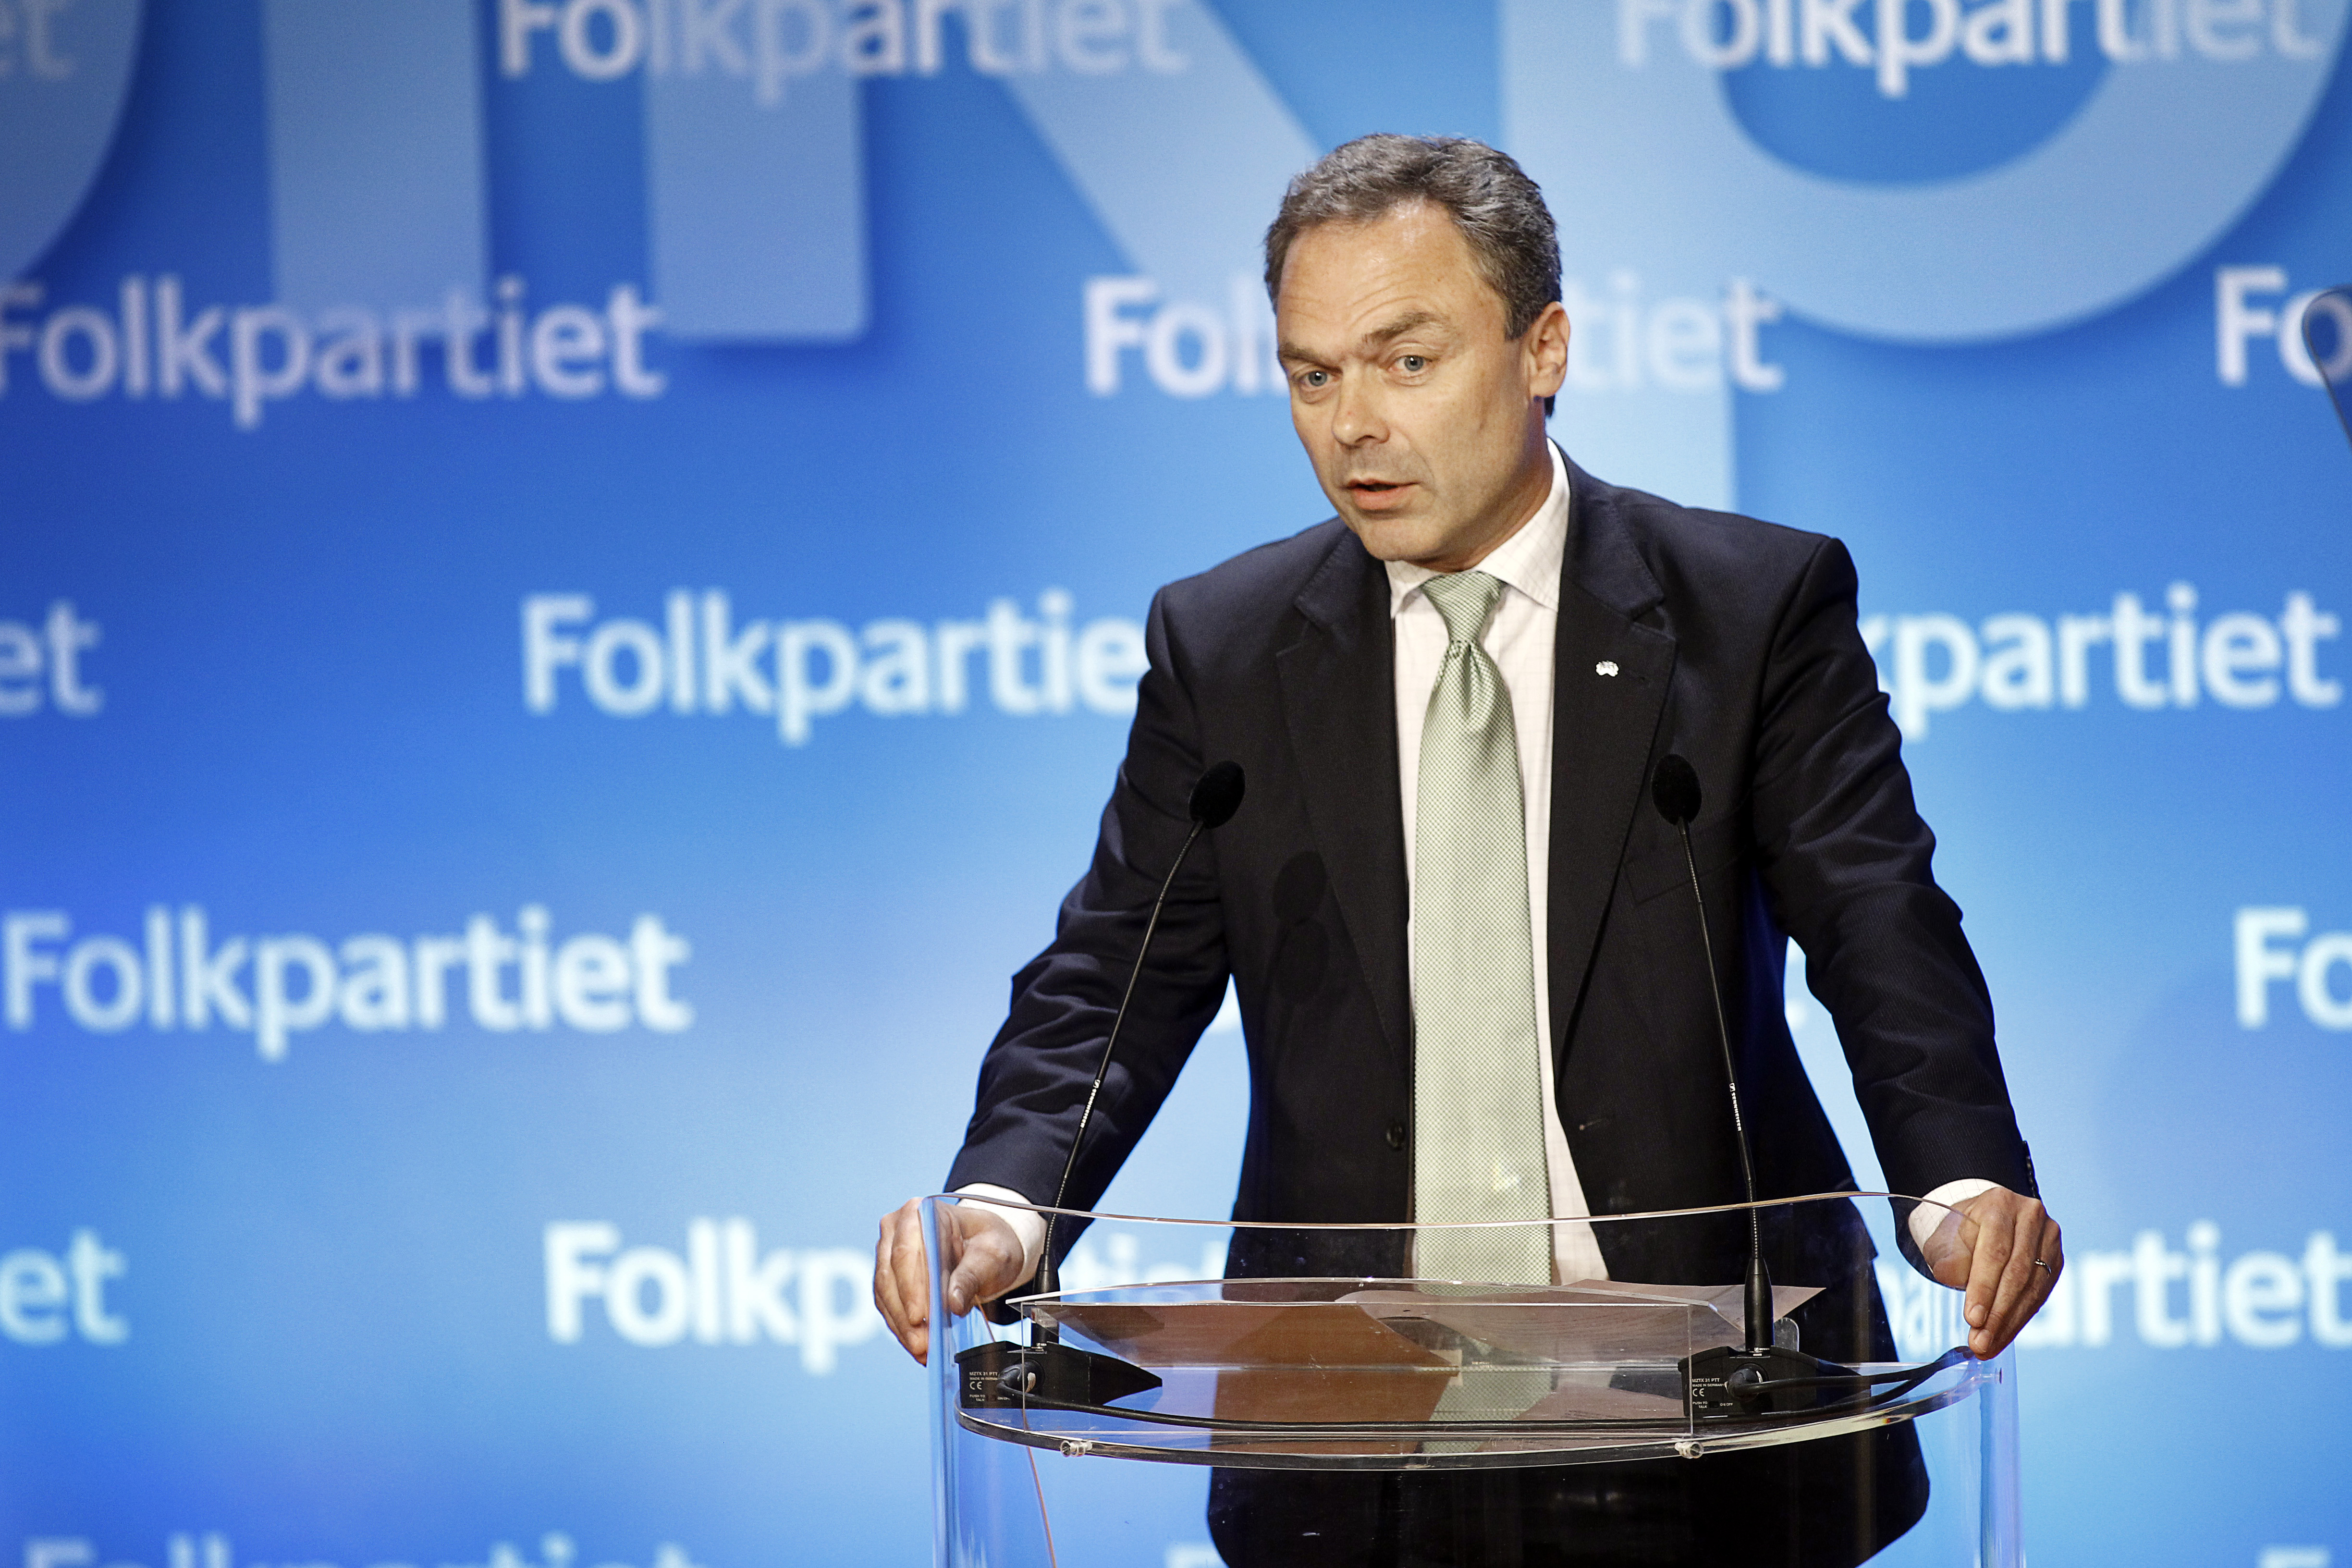 Politik, Riksdagsvalet 2010, Regeringen, Jan Björklund, Alliansen, Liberalerna